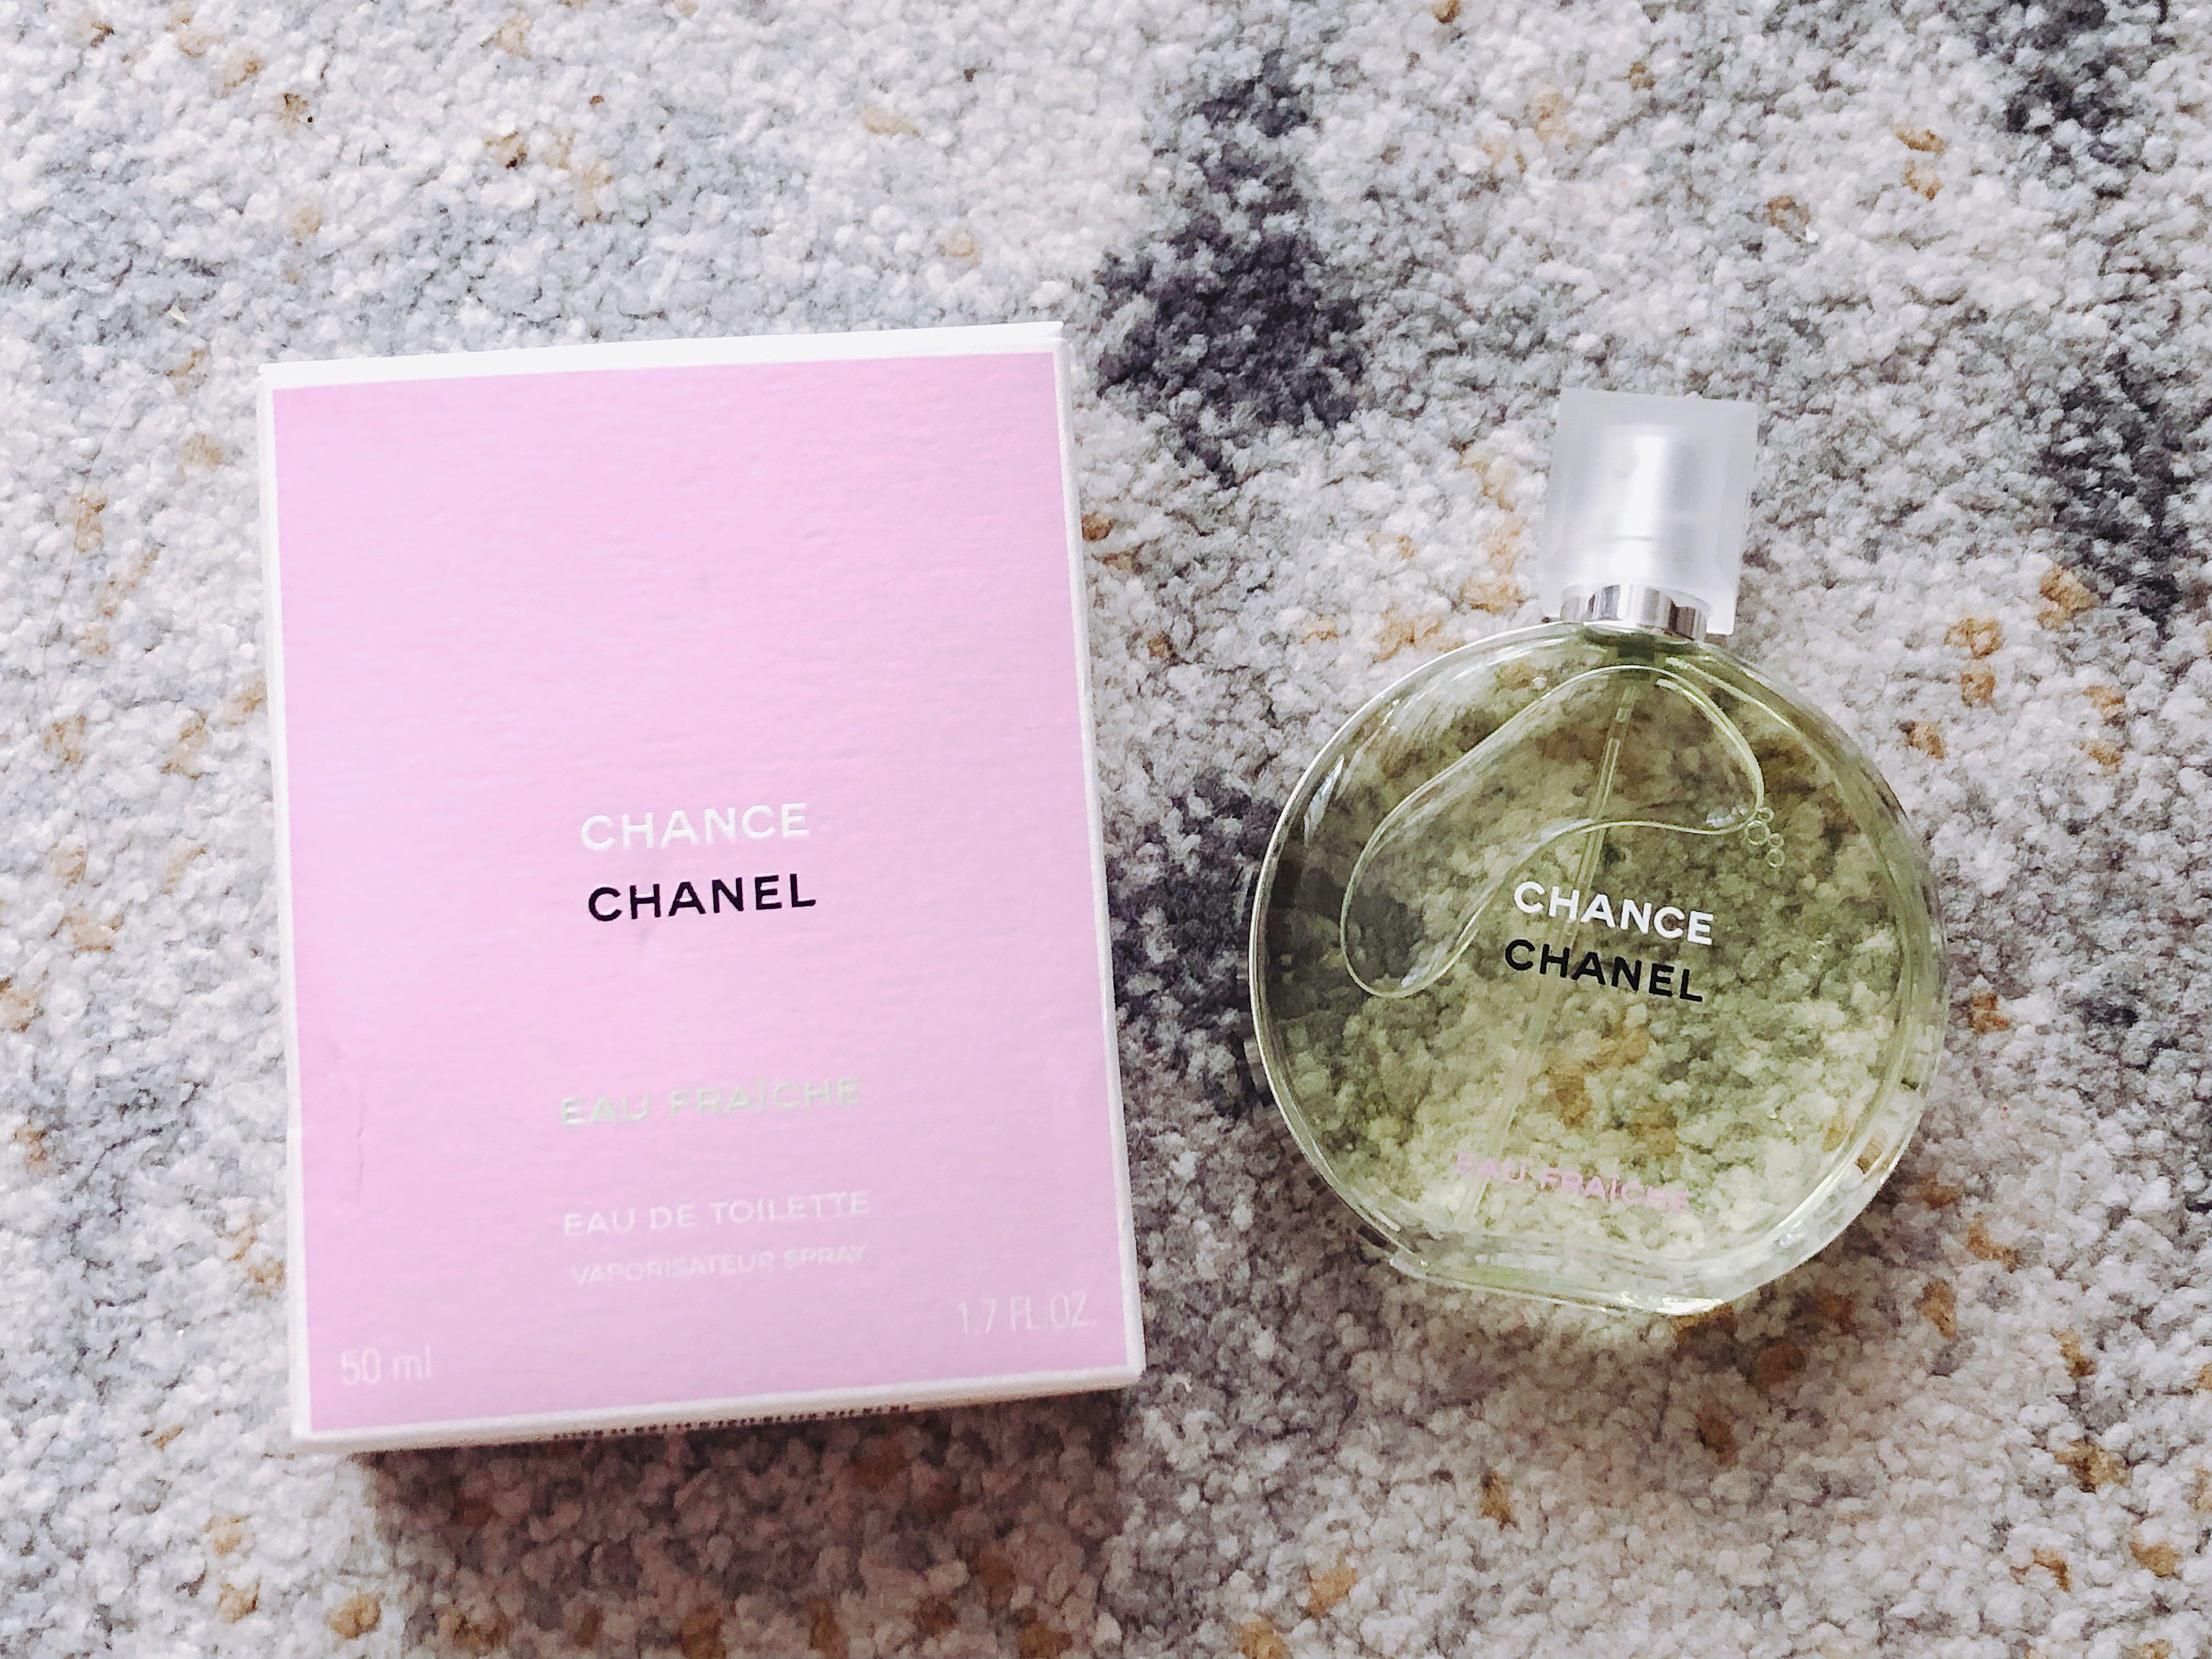 Chanel Chance Eau Fraîche Fragrance Review